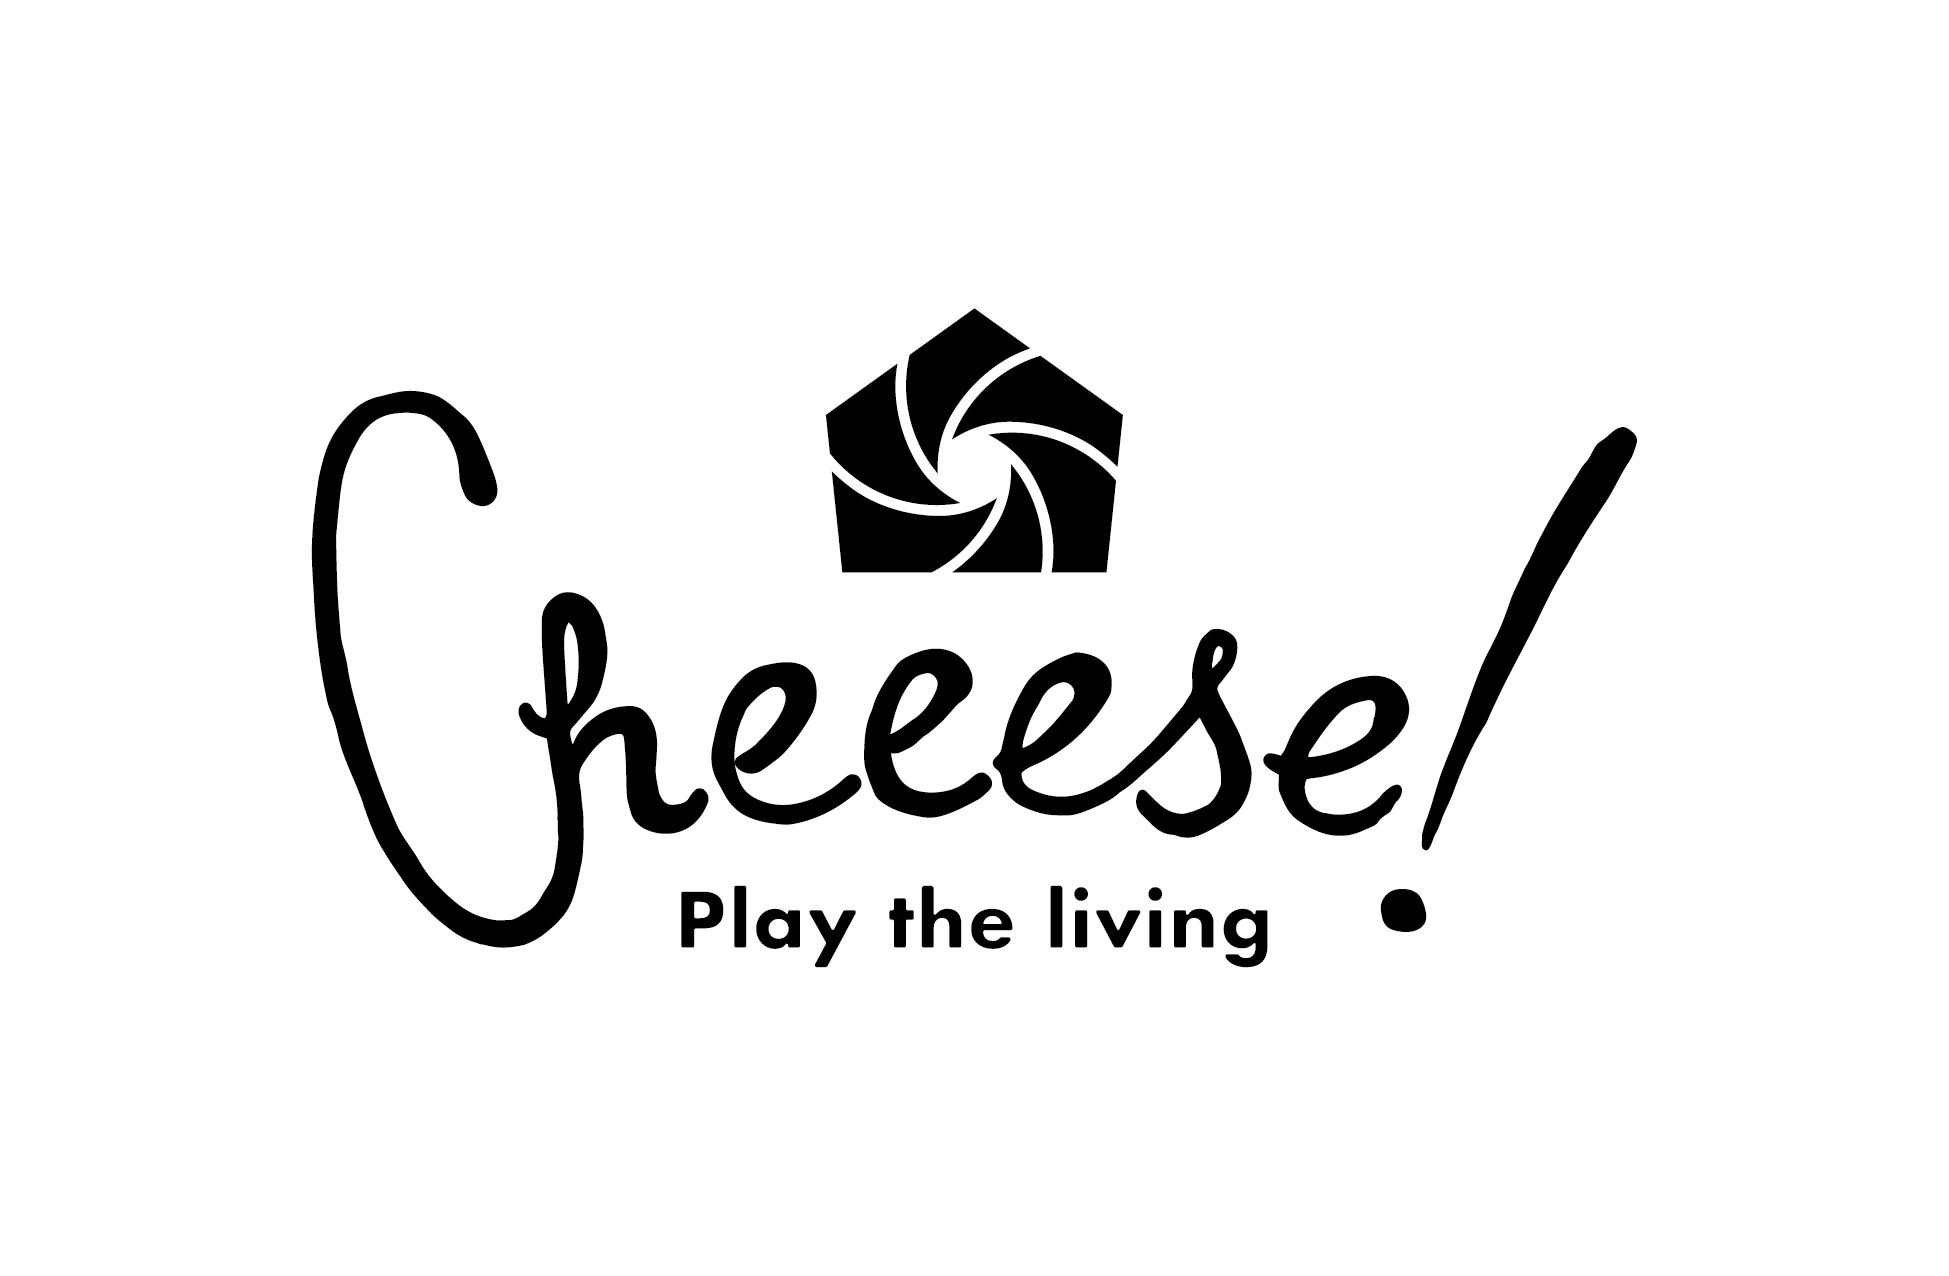 cheeeese!_2.jpg